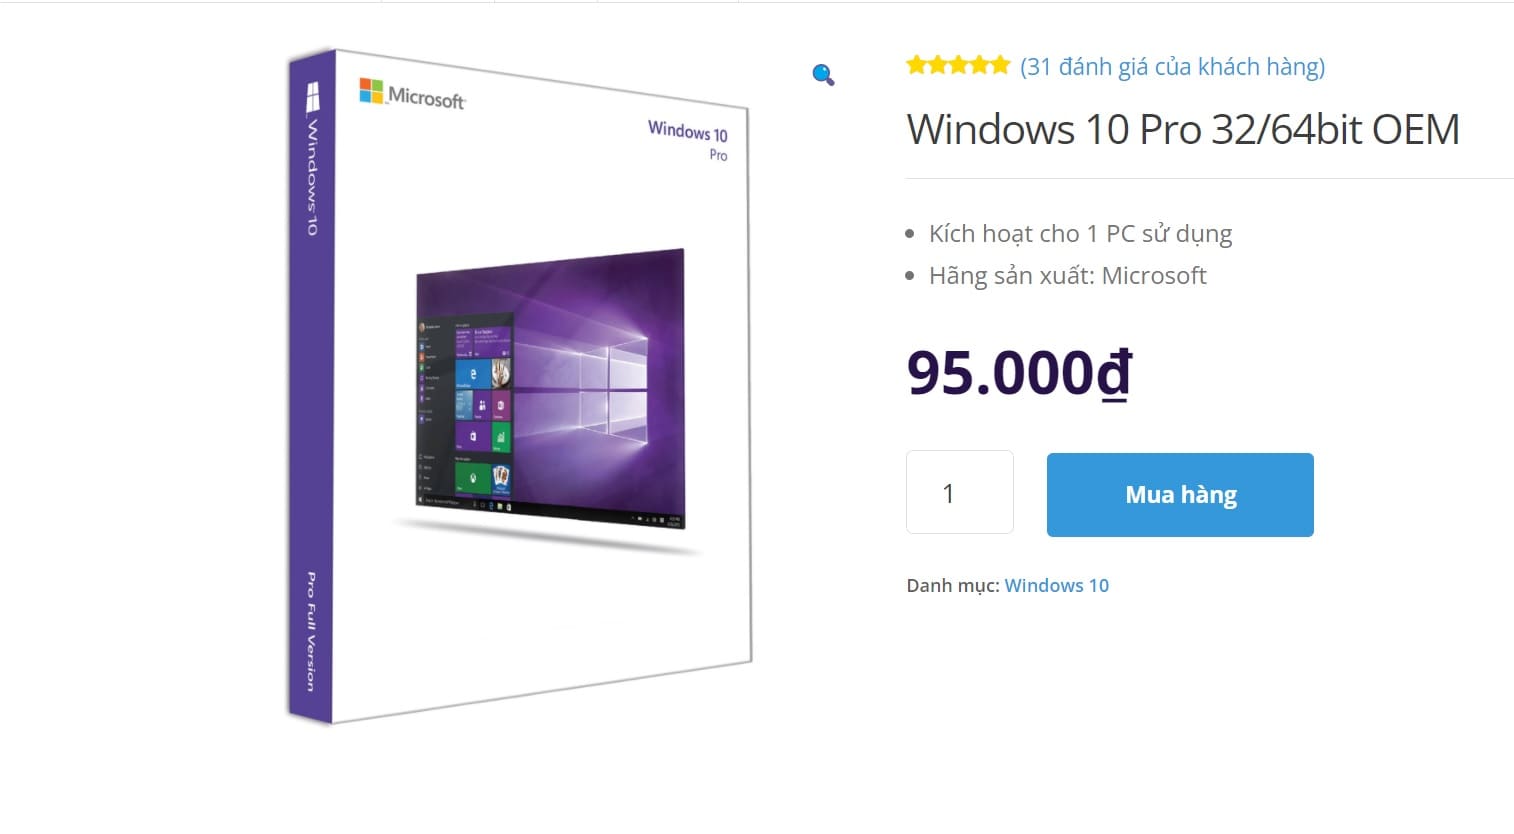 [Review] Windows 10 bản quyền giả mạo là gì? khác gì chính hãng?